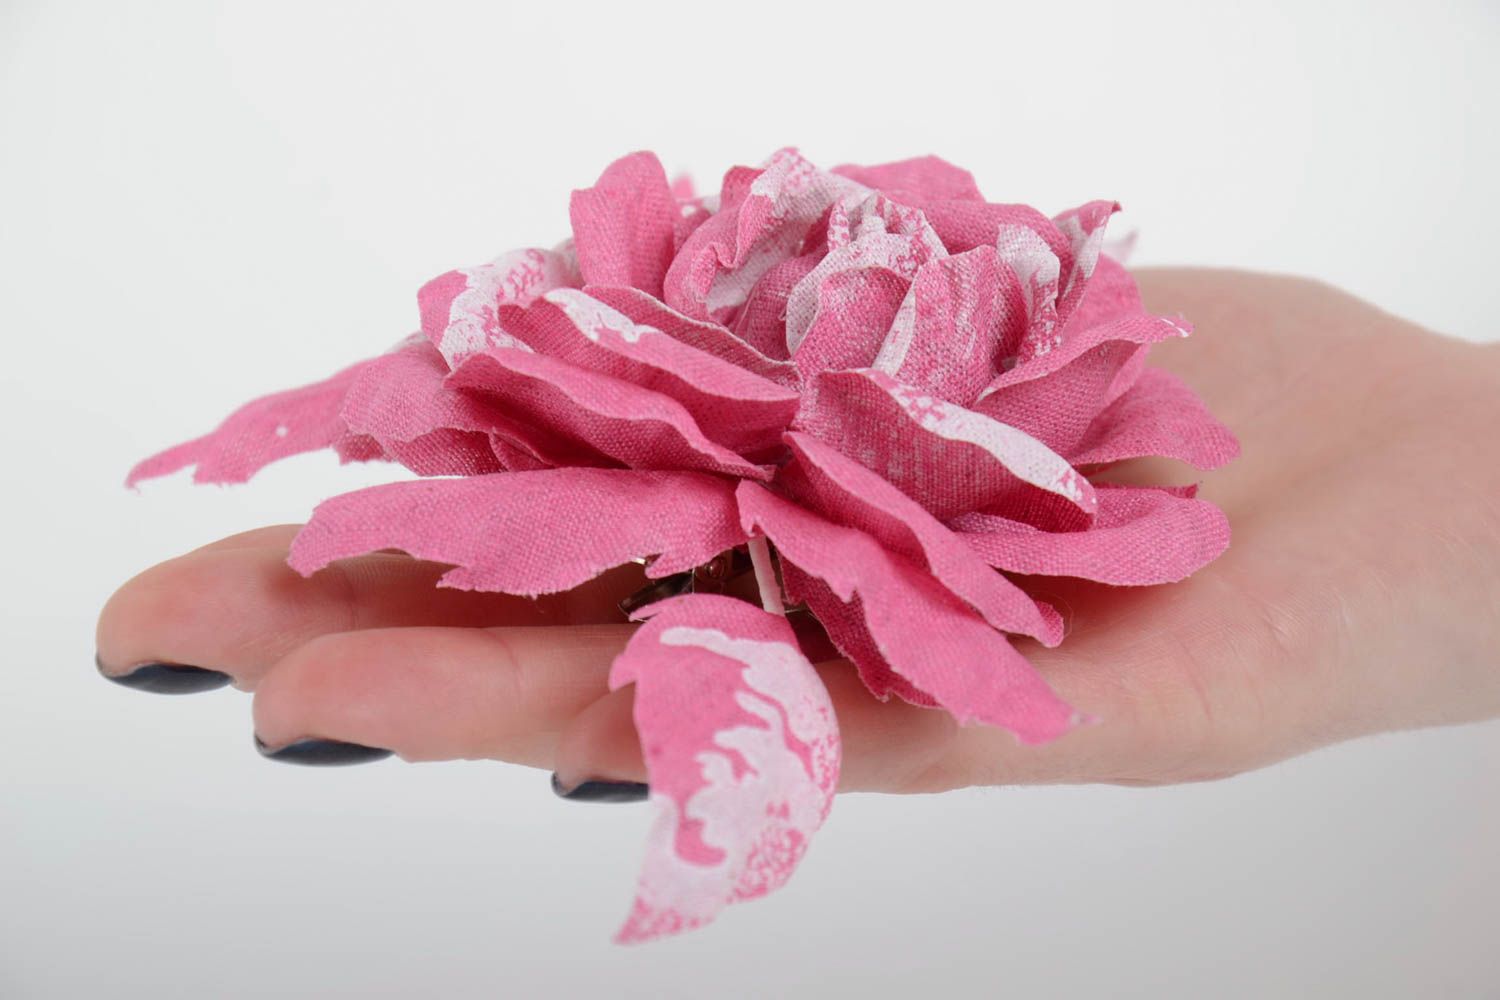 Брошь заколка из ткани розовая большая красивая крупная женская ручной работы фото 4